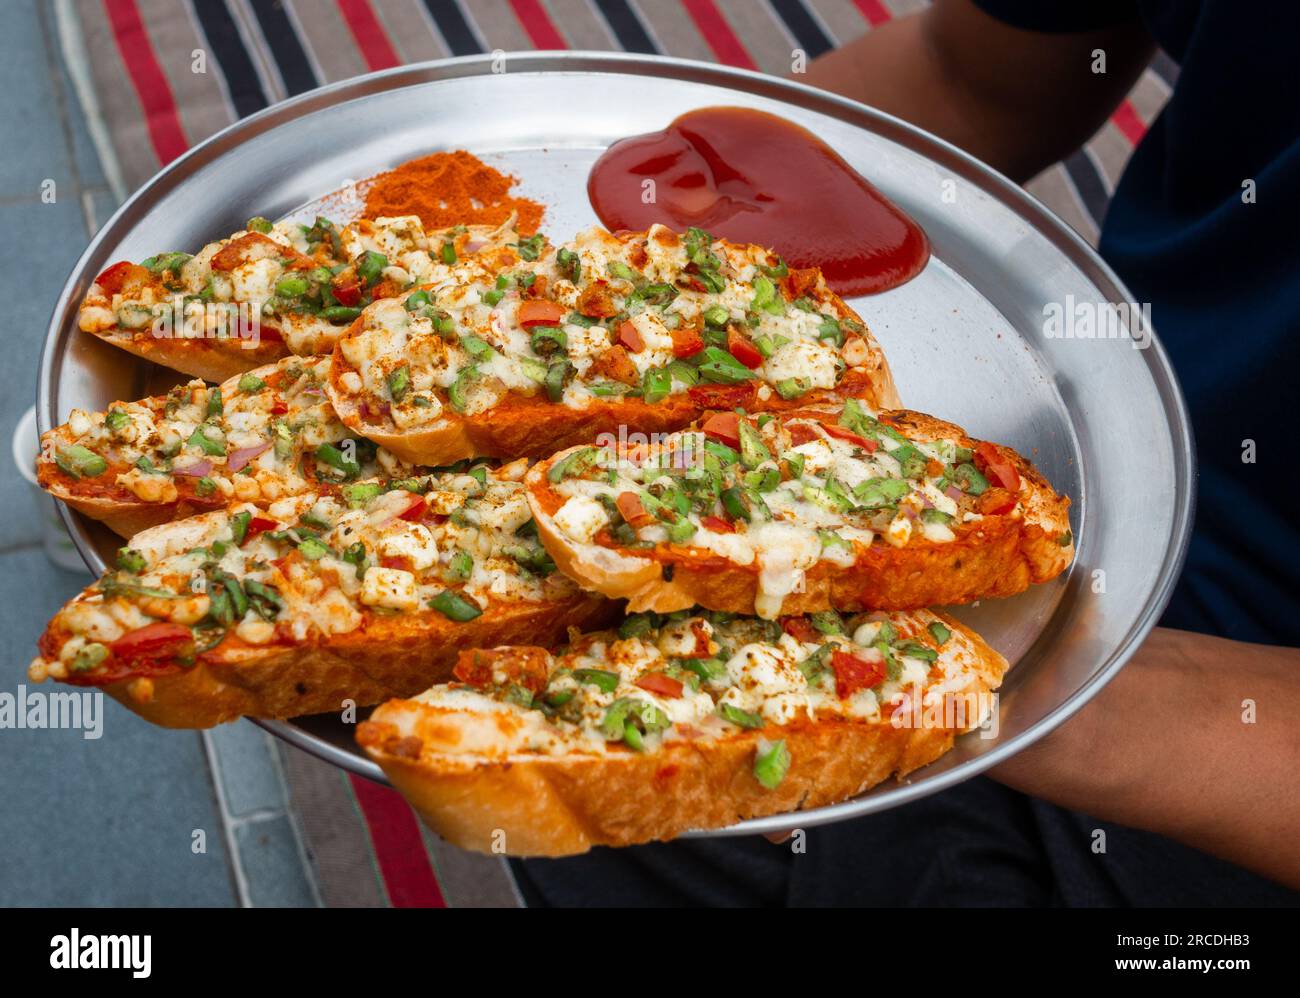 Mani che tengono in mano il pane all'aglio allo zenzero fatto in casa con formaggio e condimenti alle erbe indiane. India Foto Stock